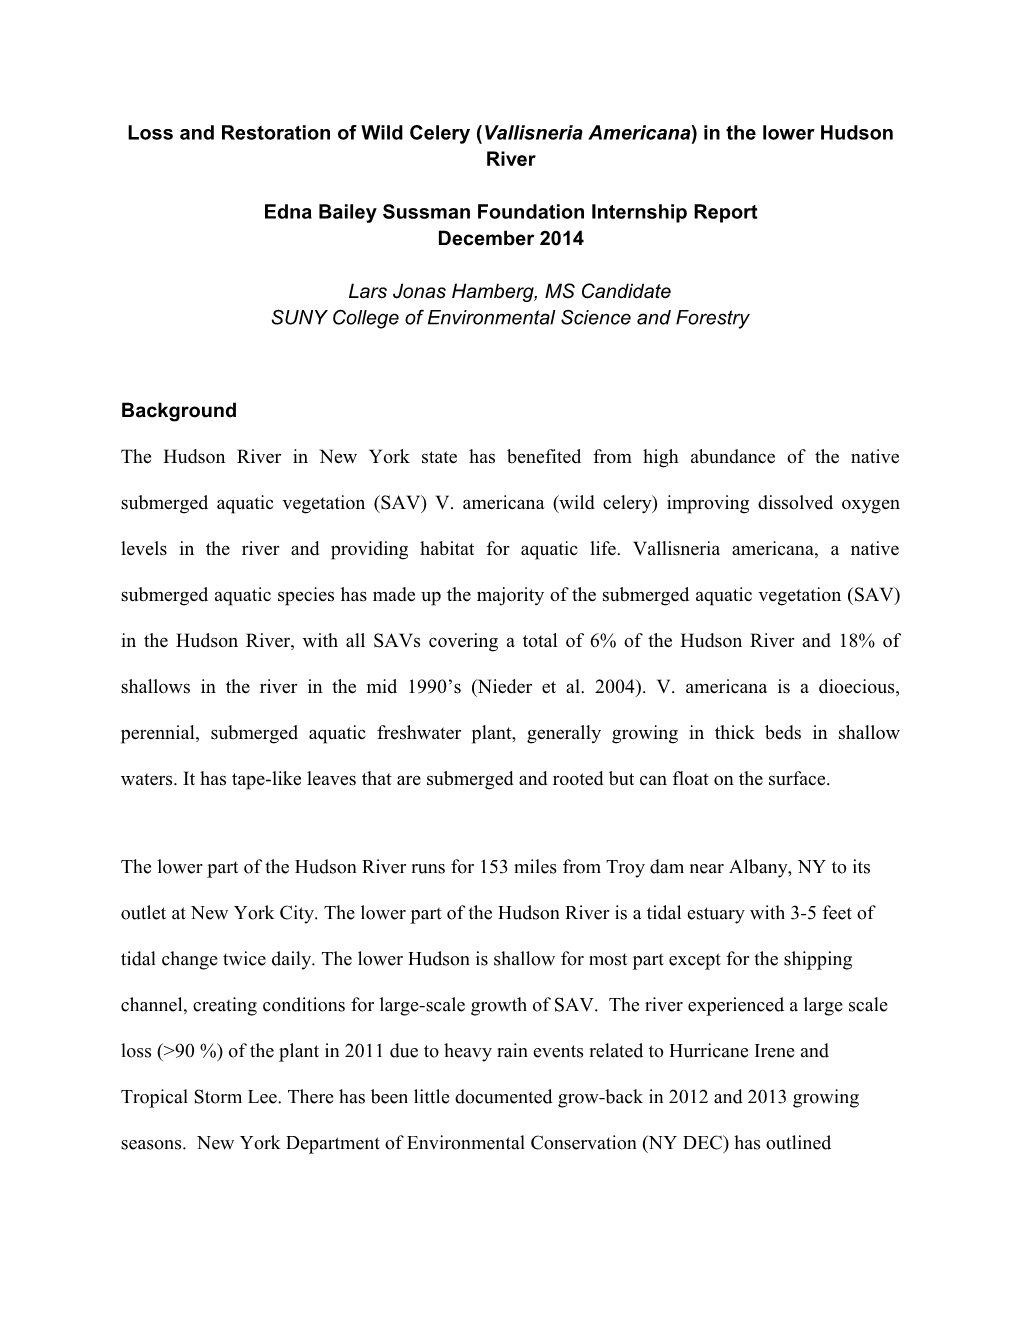 Edna Bailey Sussman Final Report